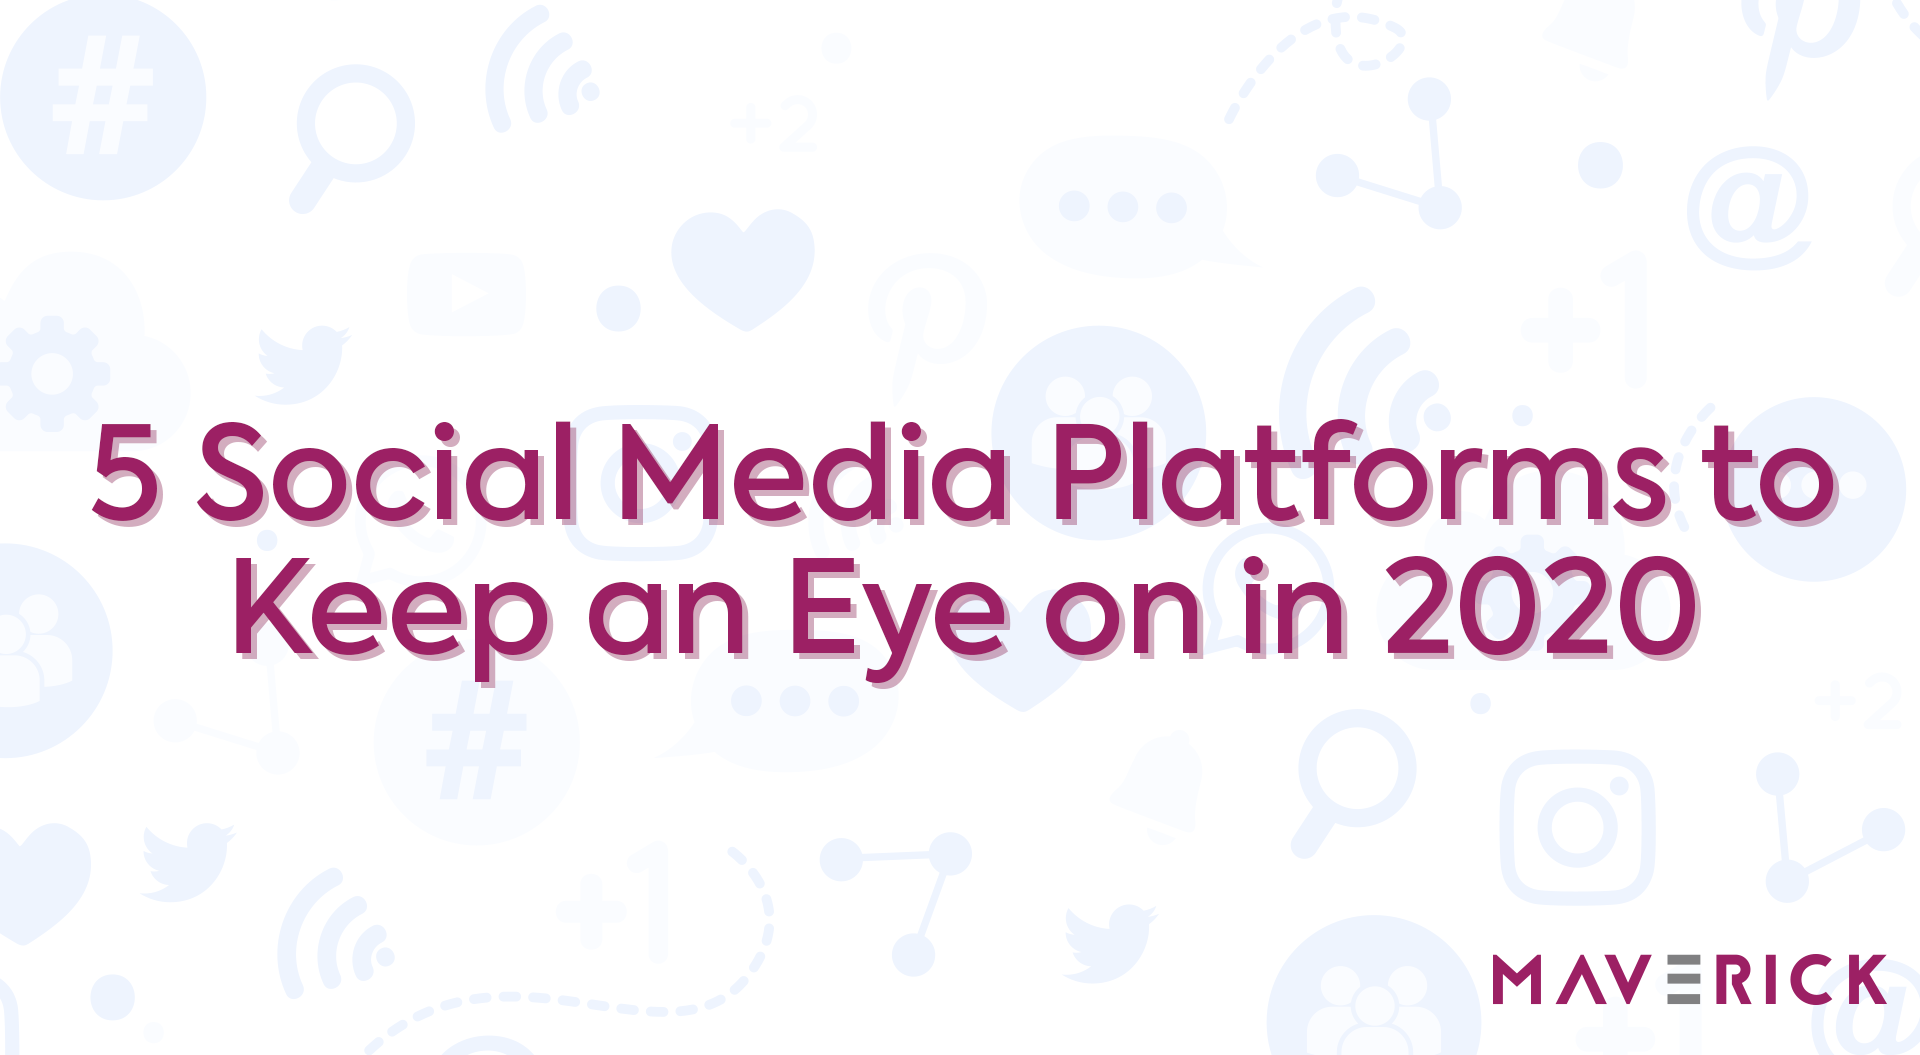 Social Media Platforms 2020